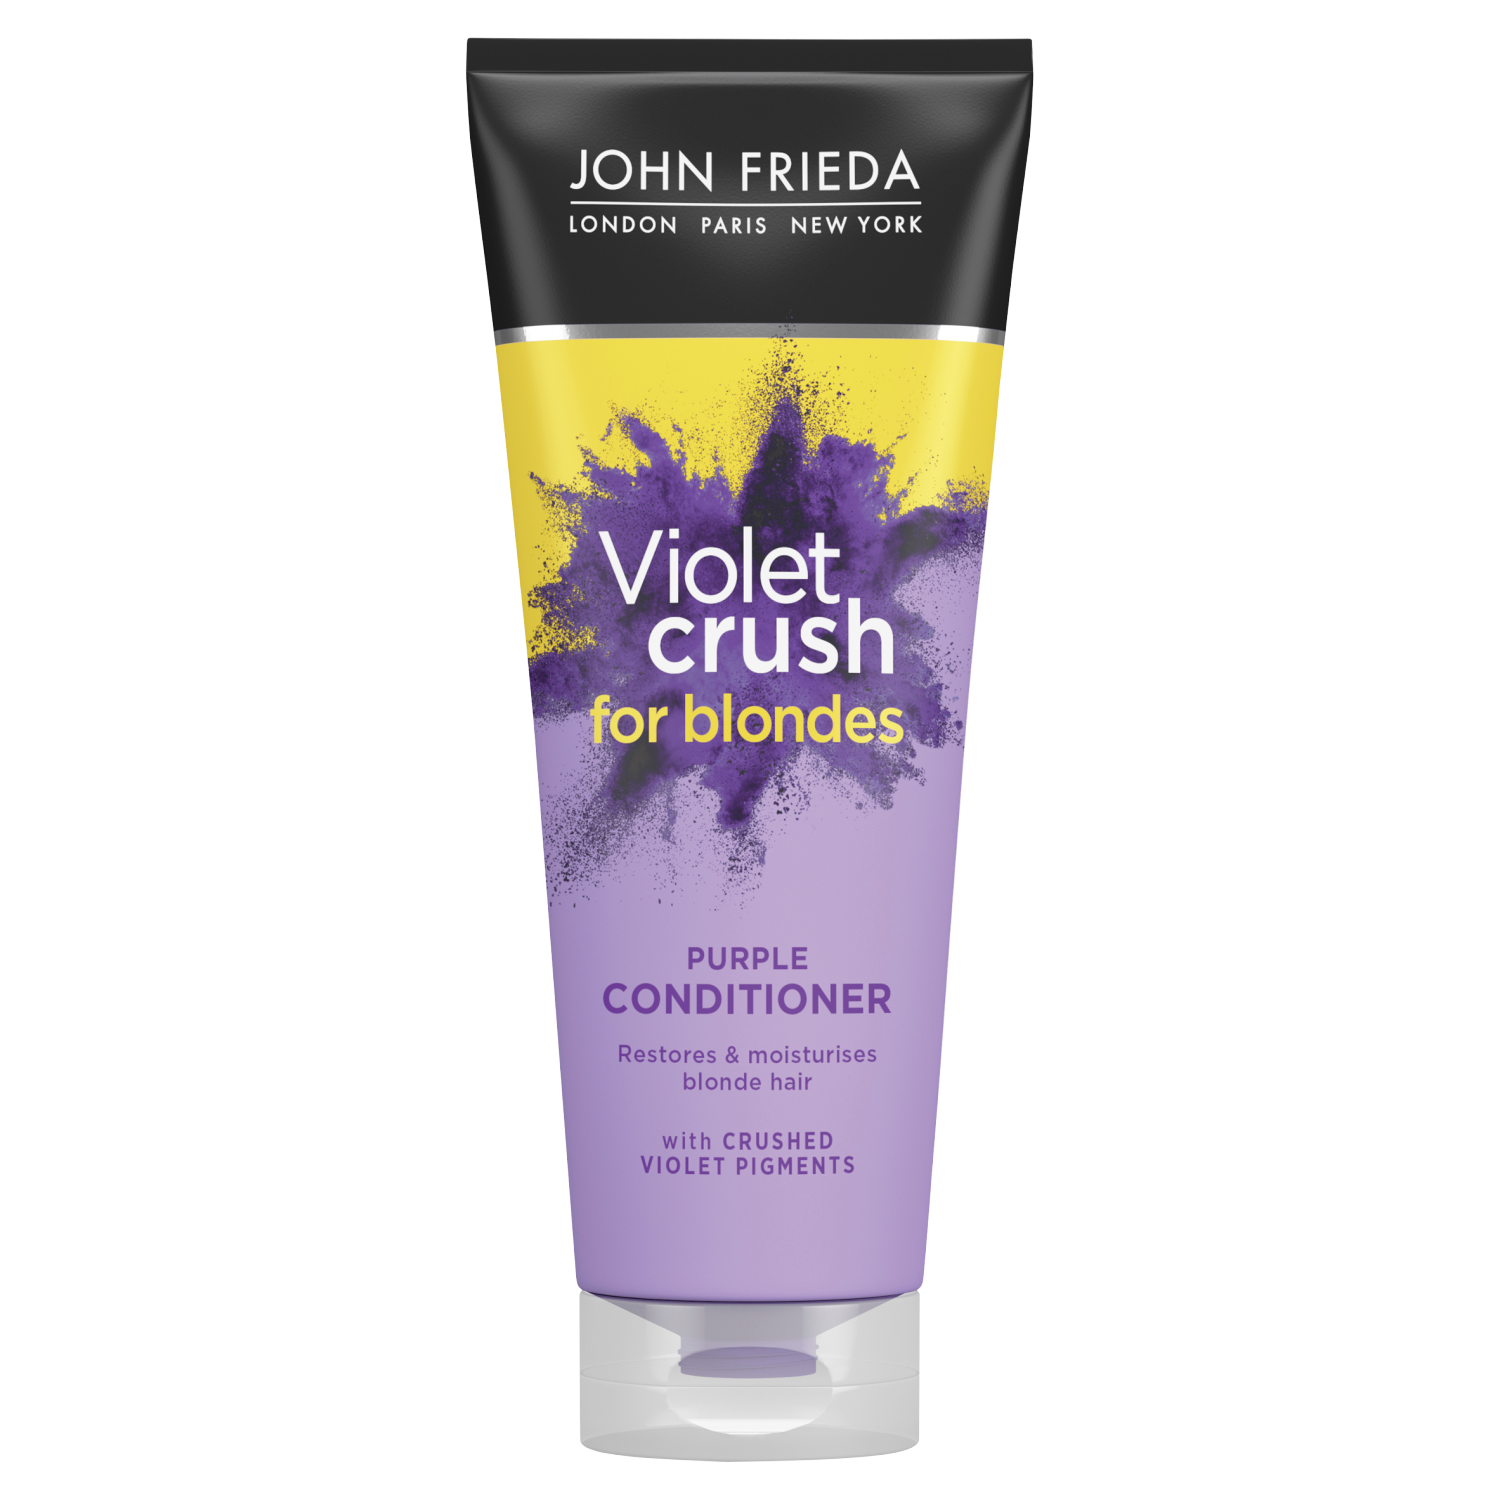 John Frieda Violet Crush кондиционер против желтизны, 250 мл кондиционер john frieda violet crush для восстановления и поддержания оттенка светлых волос 250 мл